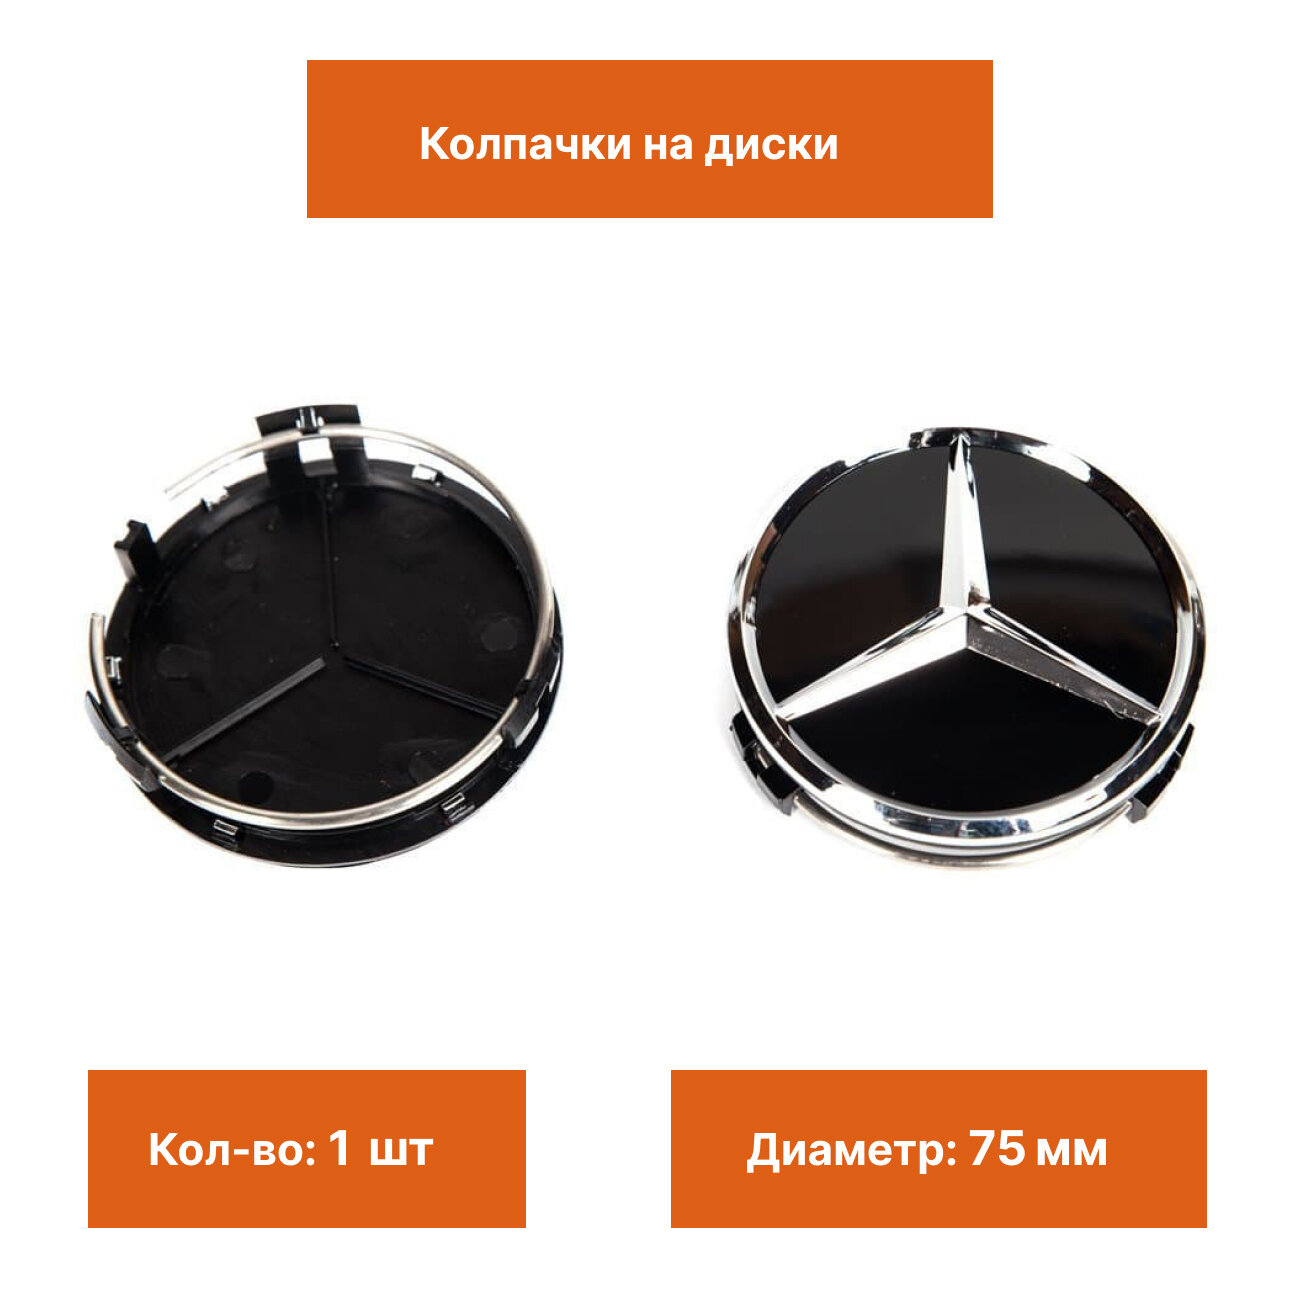 Колпак на литой диск Mercedes черный глянец с звездой 1 шт.